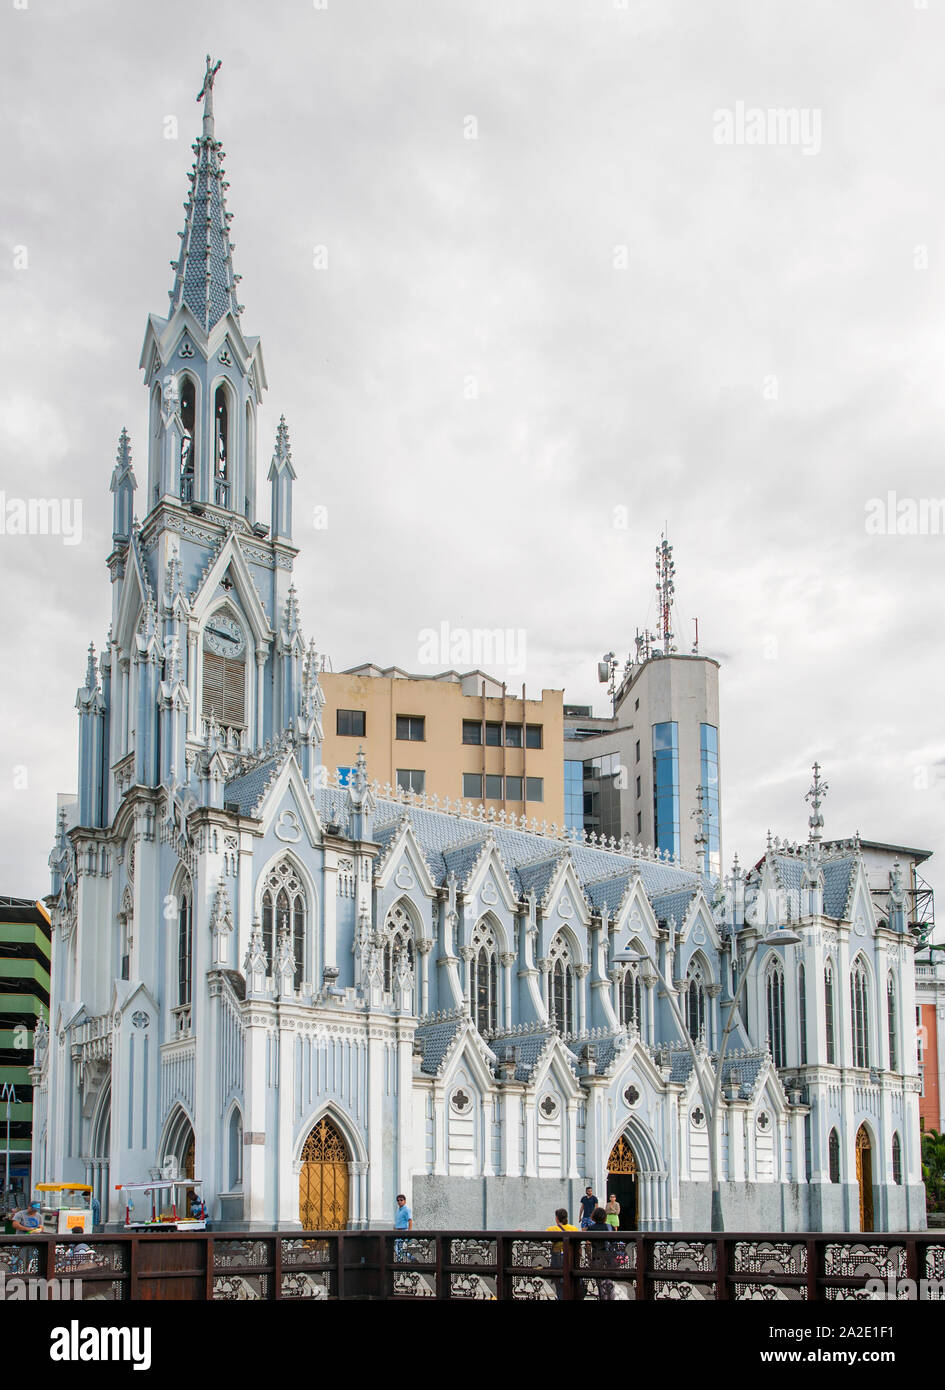 The Ermita church (La Ermita) in Cali, Colombia. It is a Neo-Gothic Roman Catholic church. Stock Photo